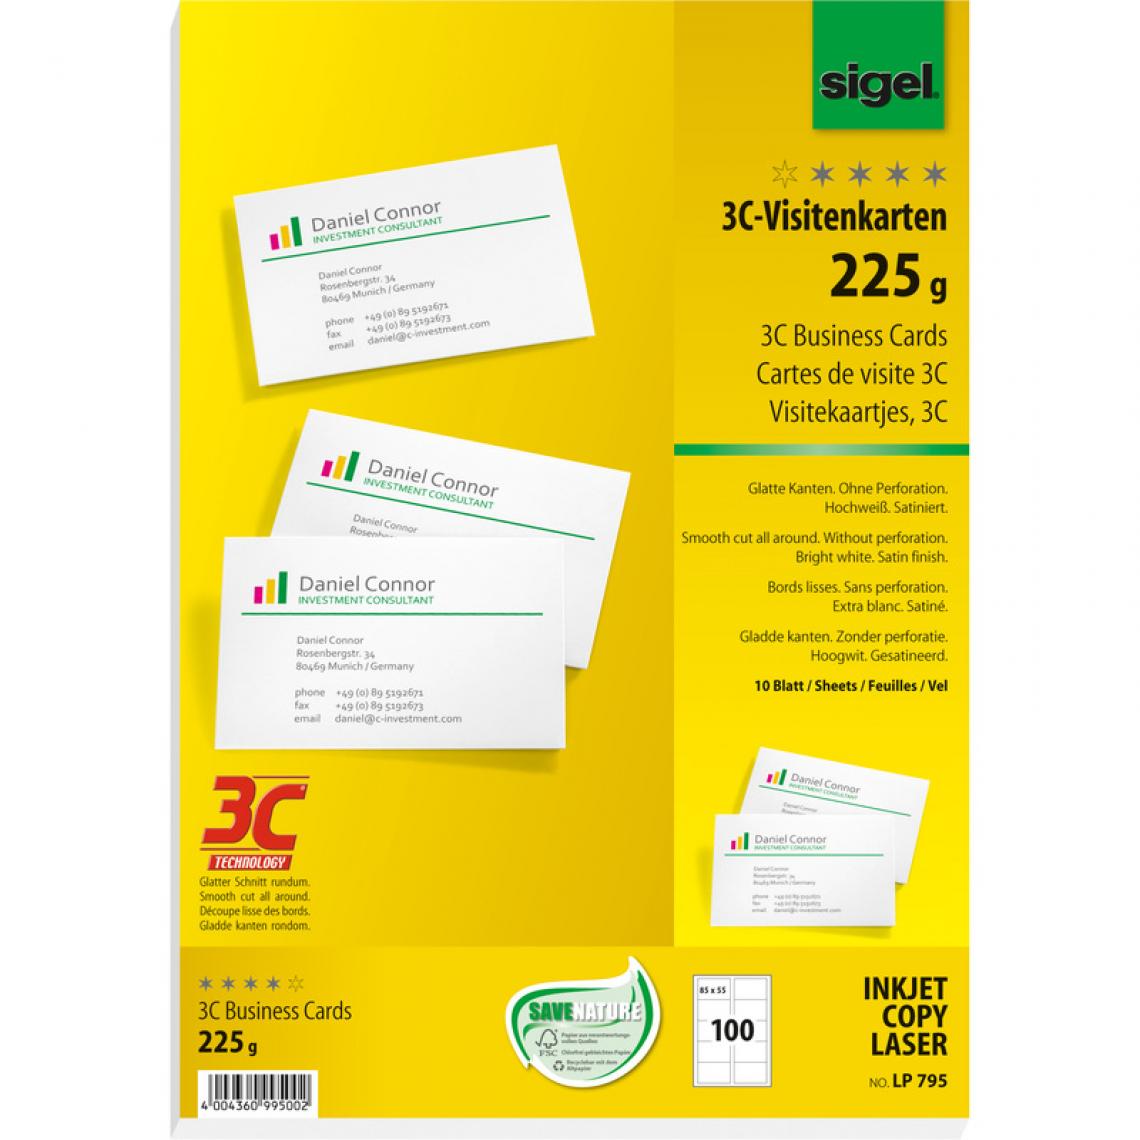 Sigel - sigel Cartes de visite 3C, 85 x 55 mm, 225 g/m2, extra blanc () - Accessoires Bureau